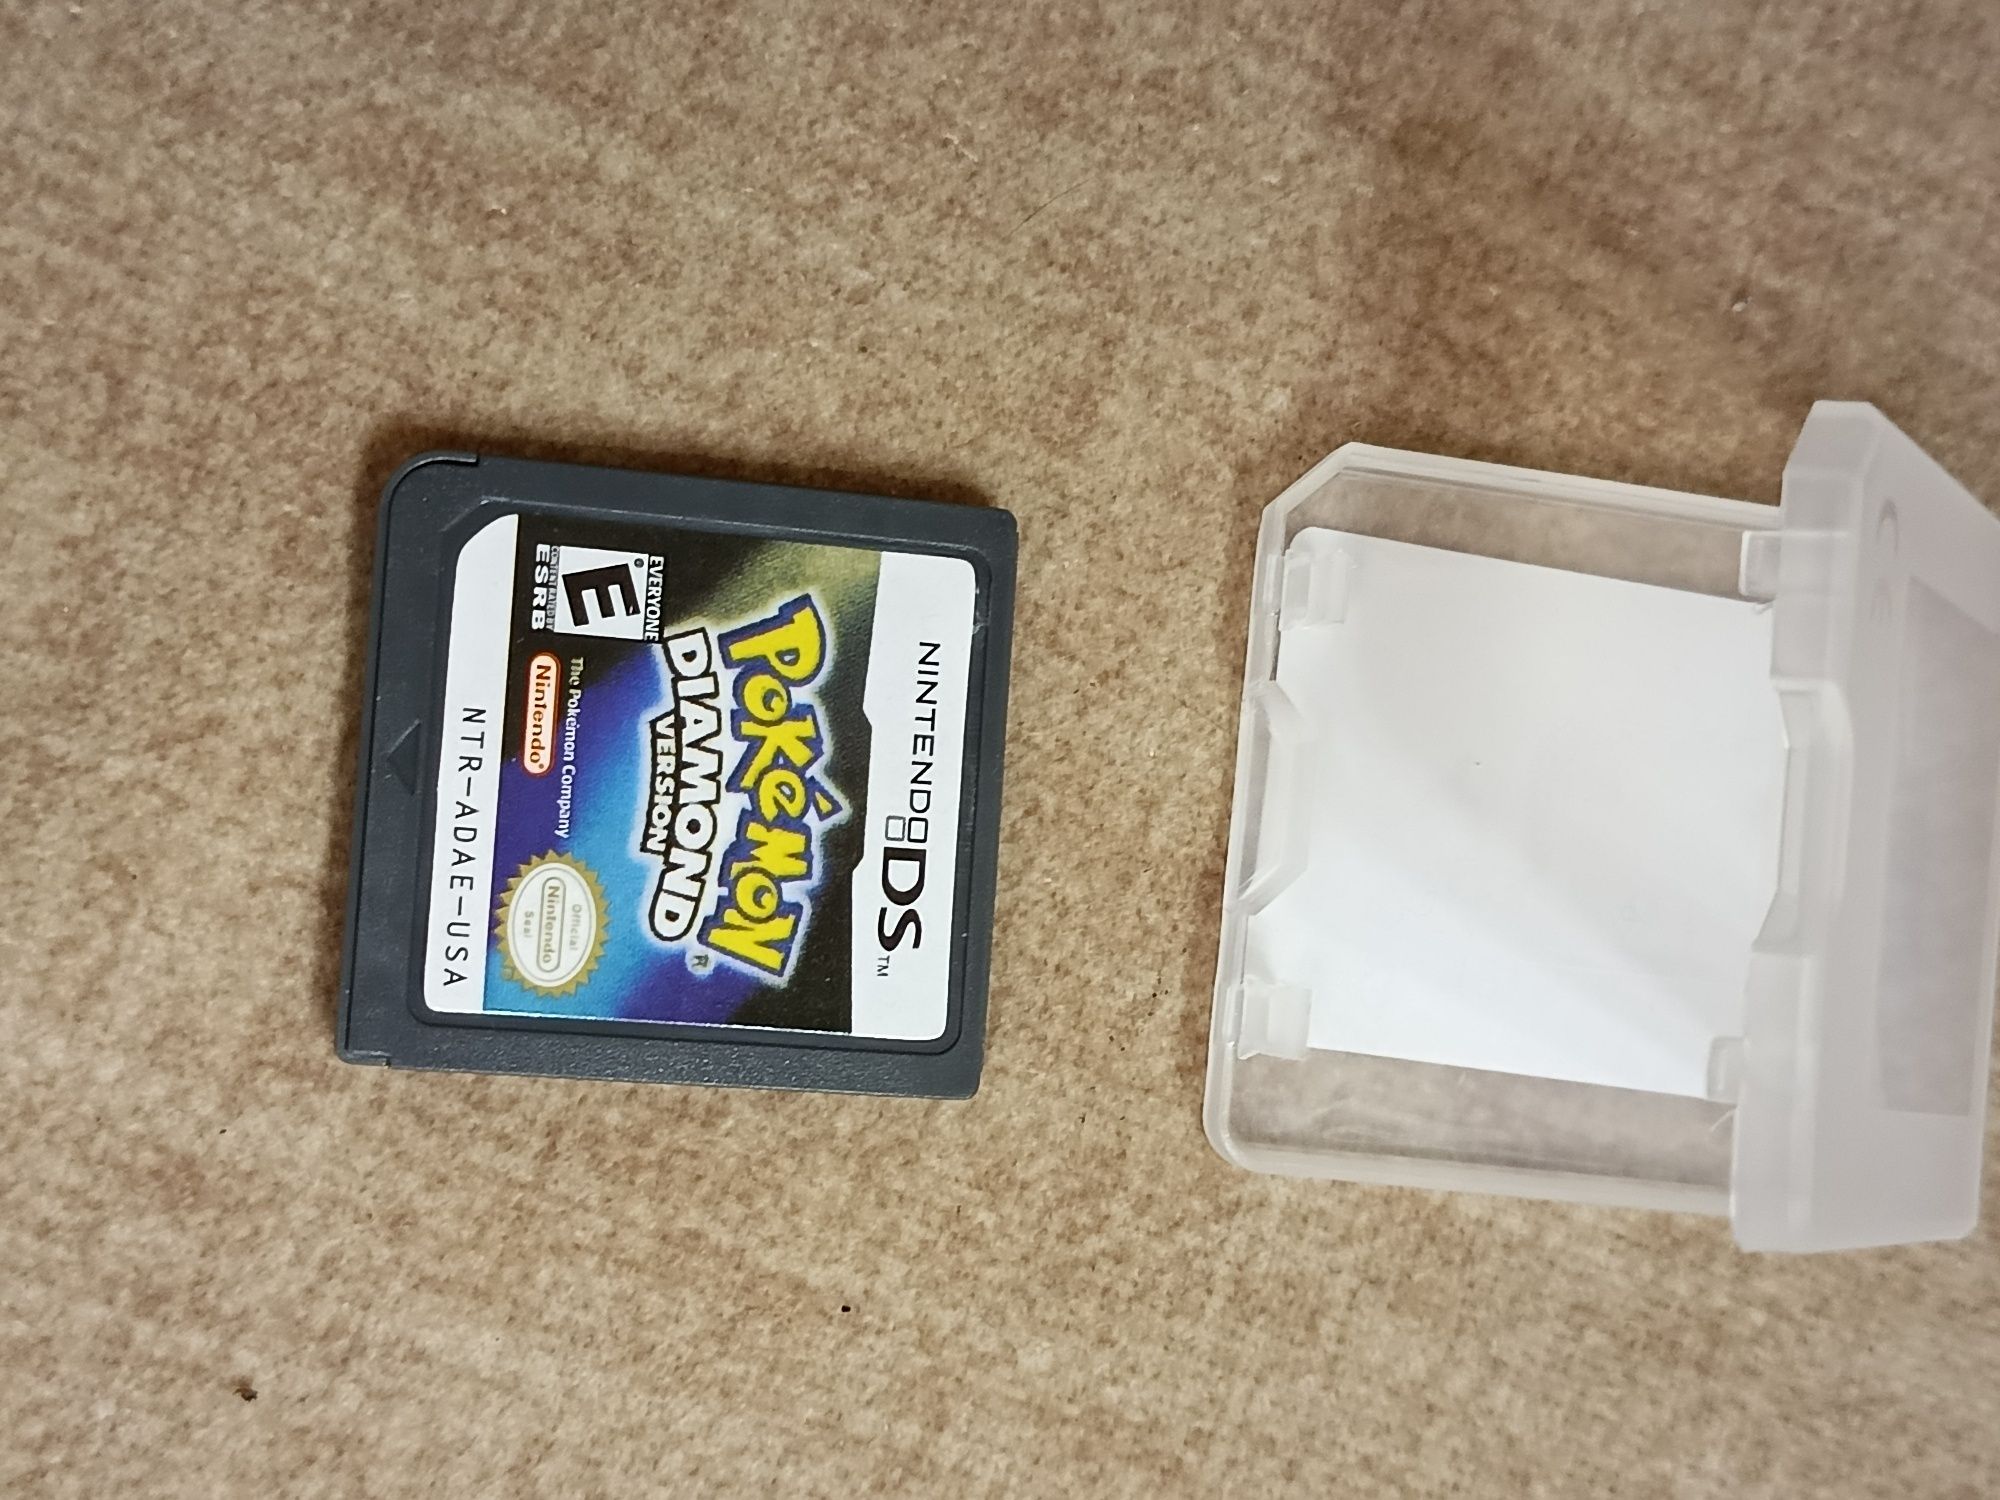 За2. Nintendo ds, Pokémon diamond version, Pokémon soul silver version